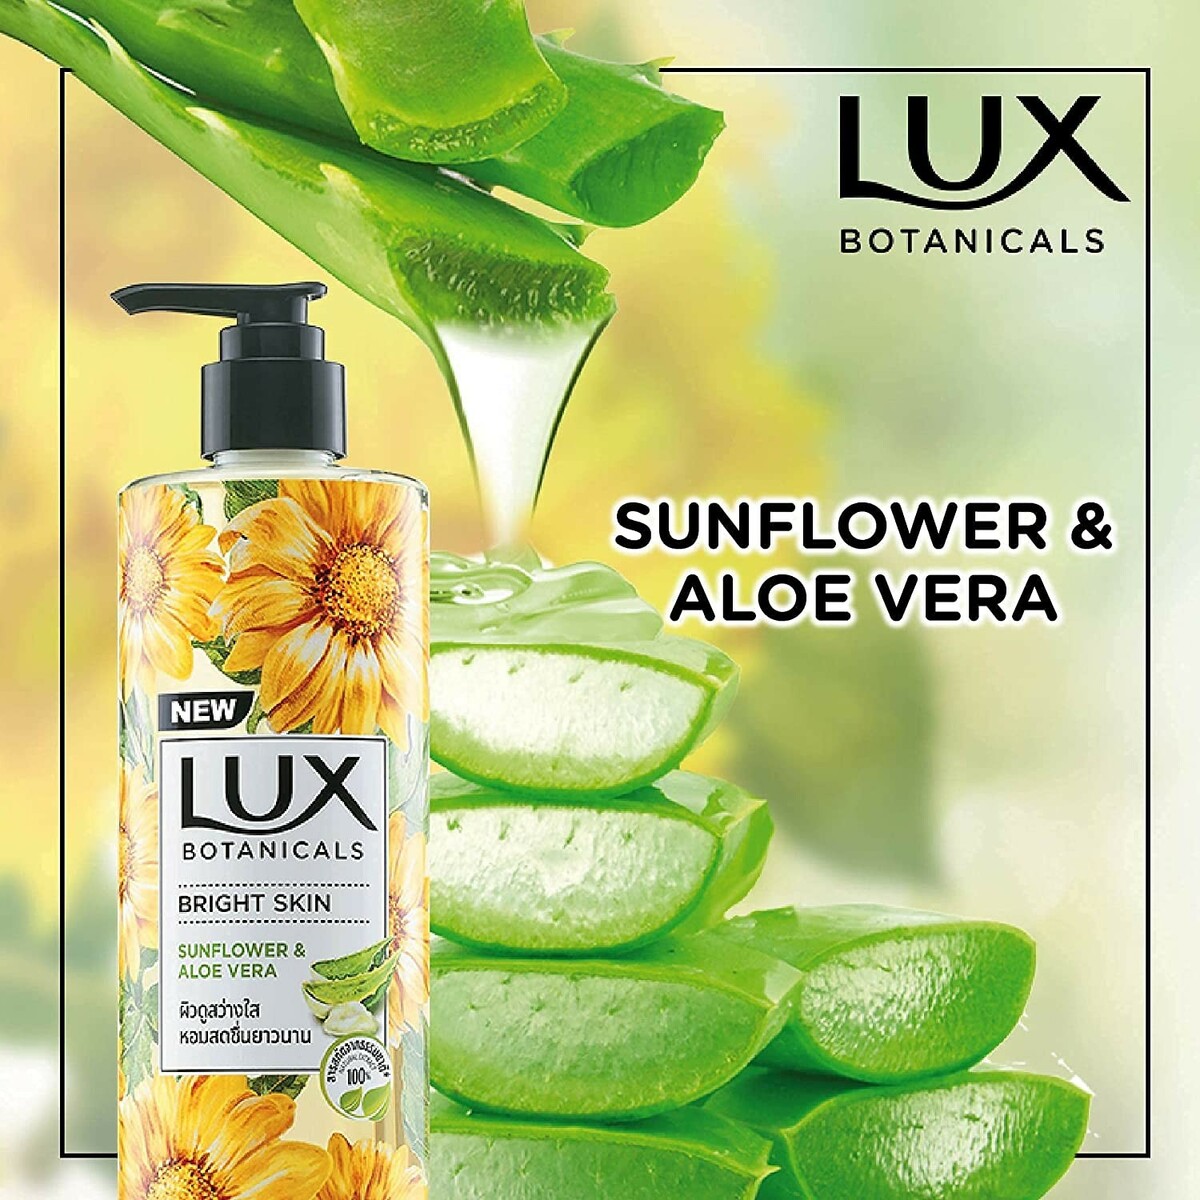 Lux Botanicals Bright Skin 450ml